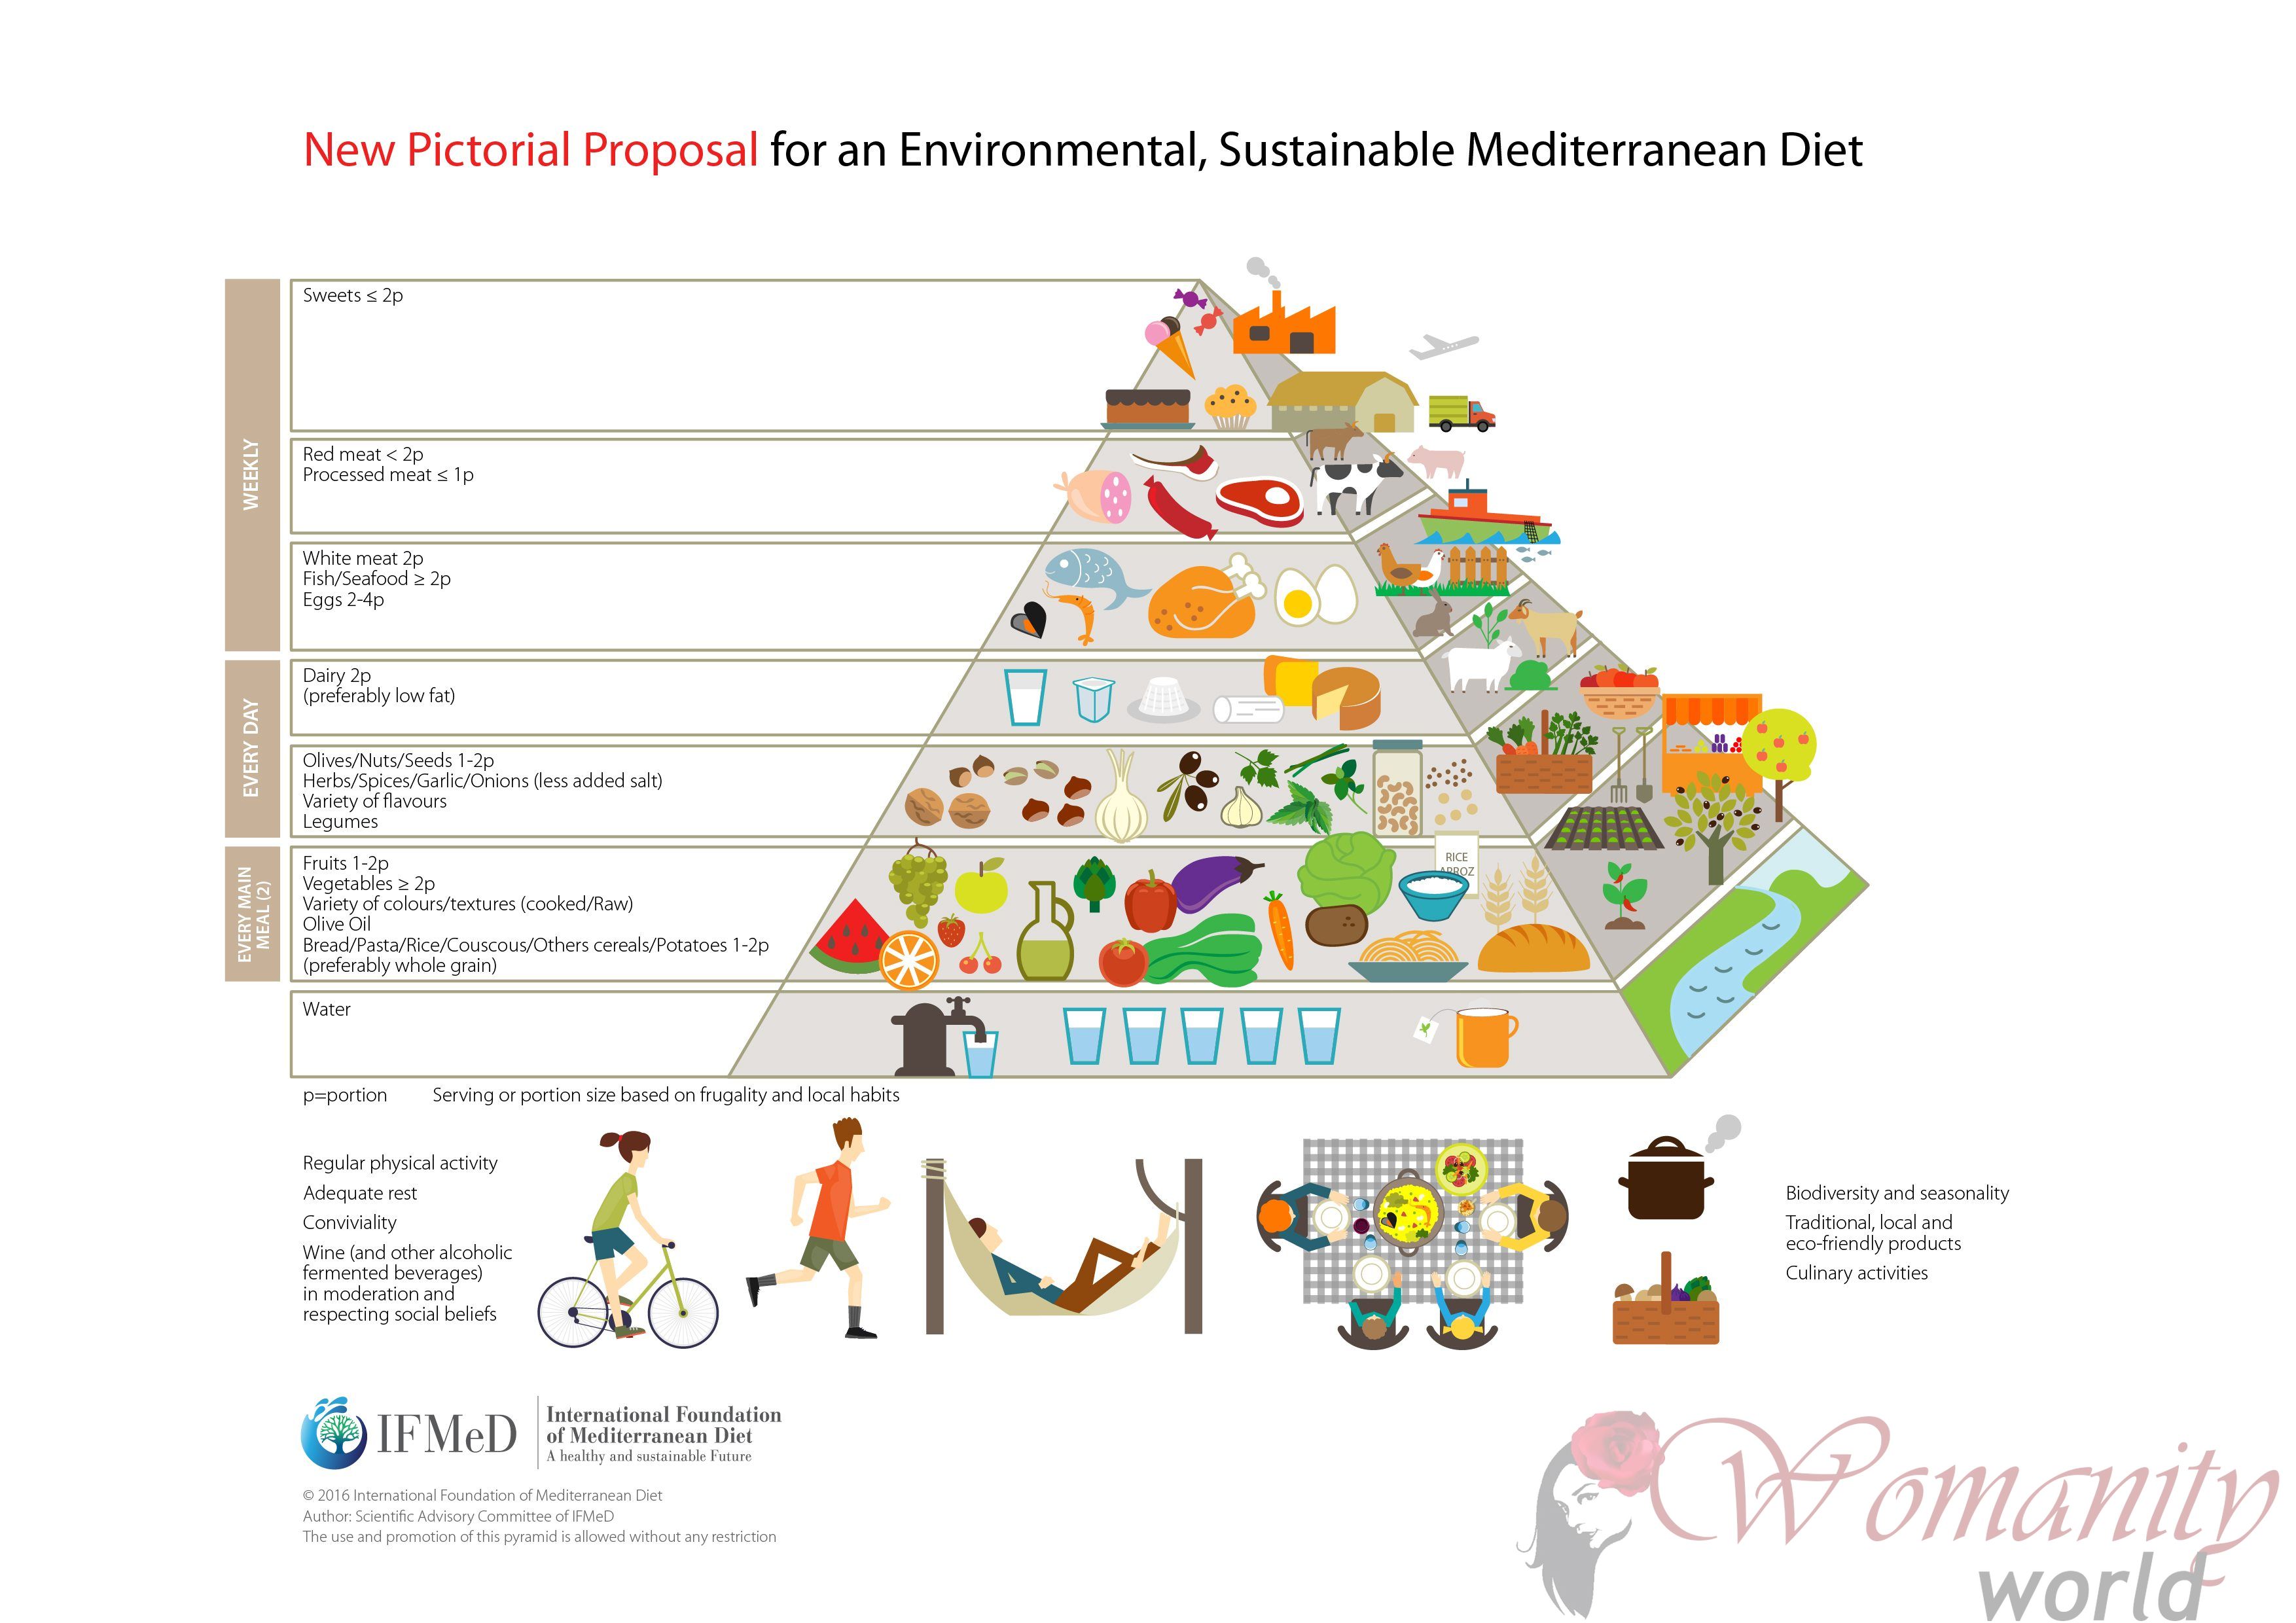 Duurzame voeding, kern van de nieuwe mediterrane dieet piramide